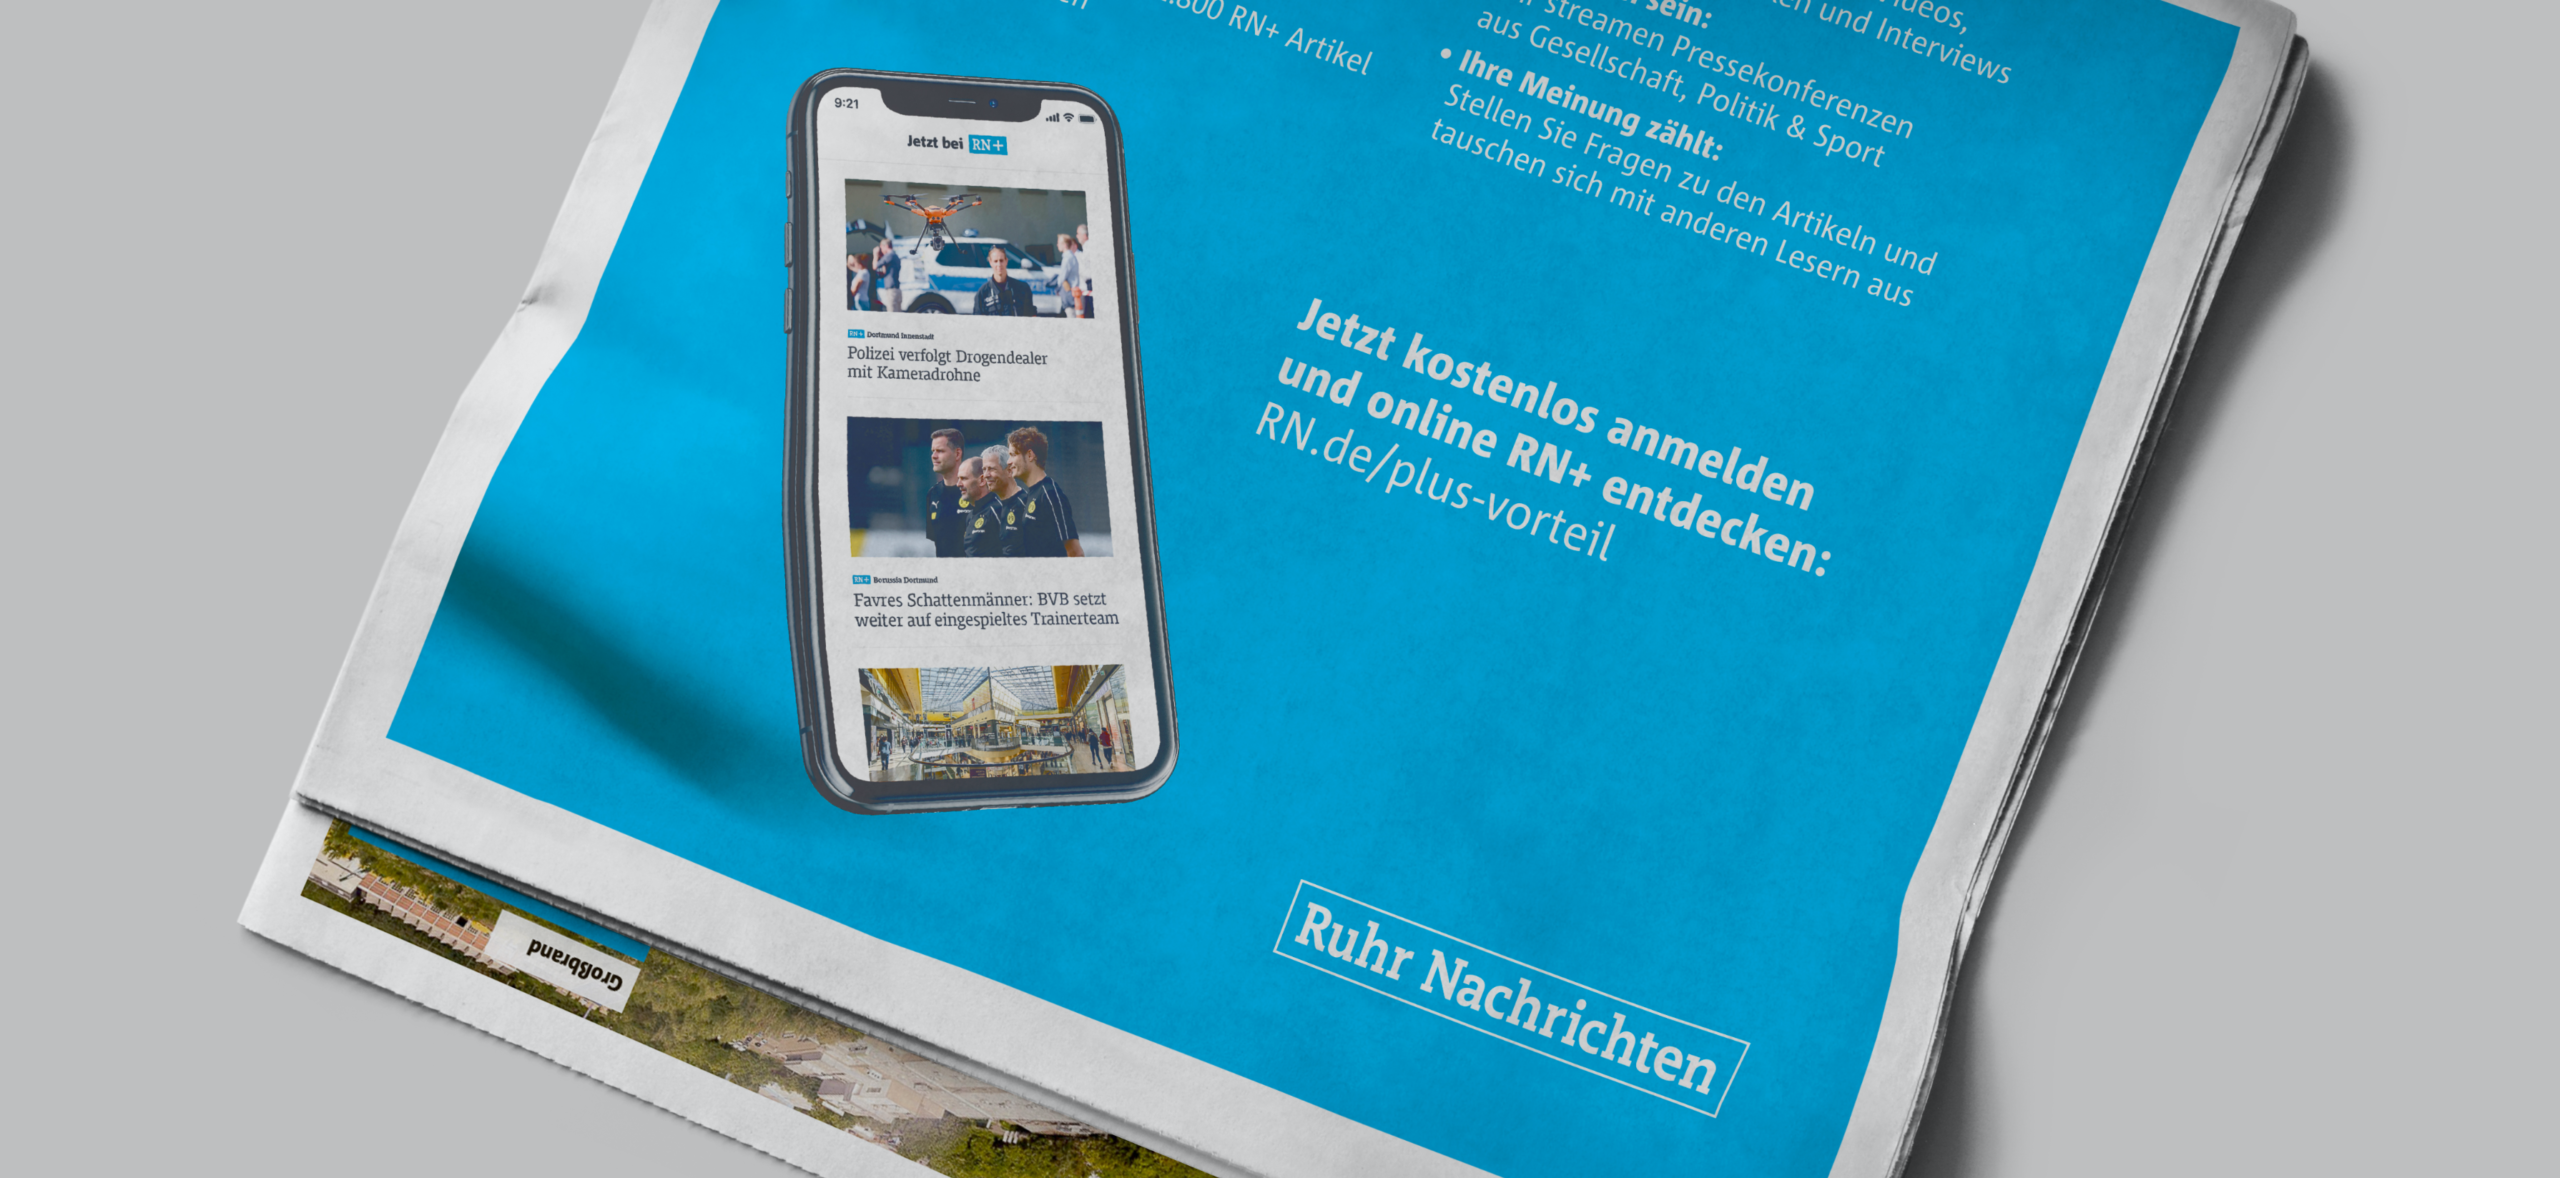 Ruhr Nachrichten Anzeige